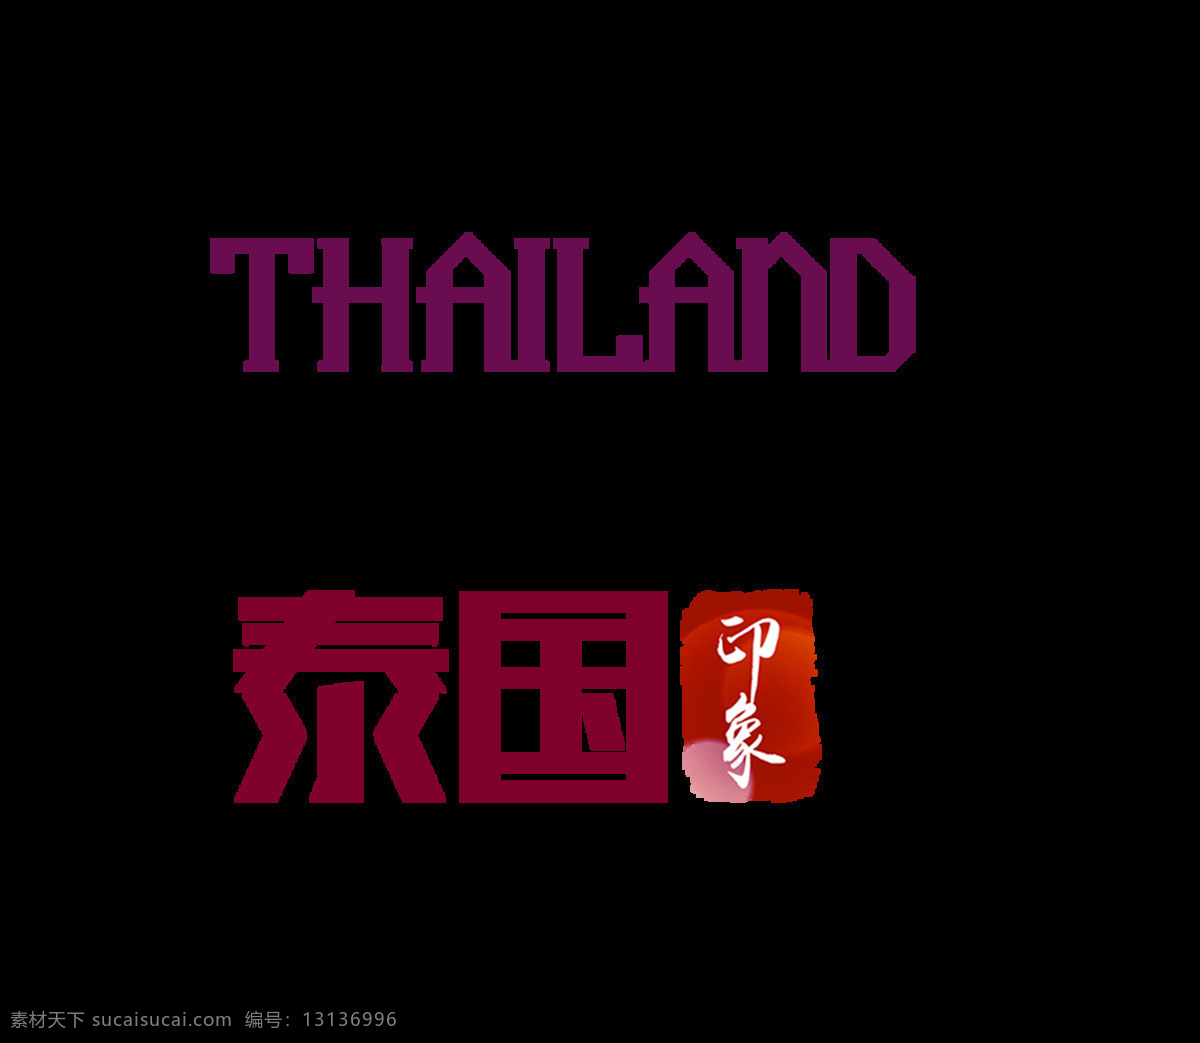 泰国 印象 精彩 艺术 字 字体 旅游 美食 广告 泰国印象 出国 精彩泰国 佛教 艺术字 海报